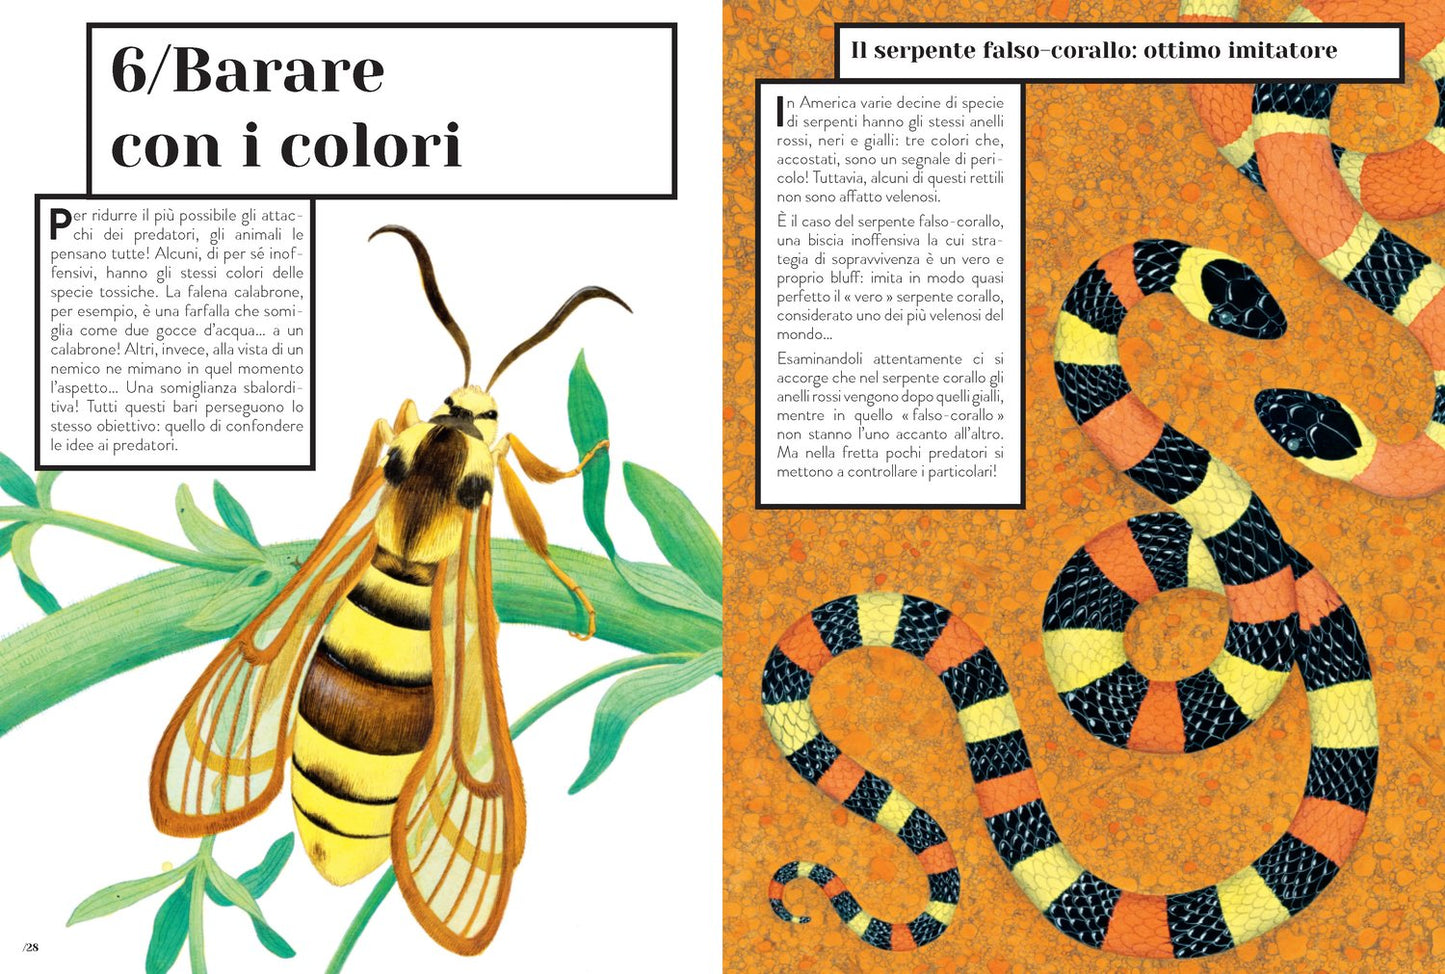 Coloranimale - Come gli animali usano i colori